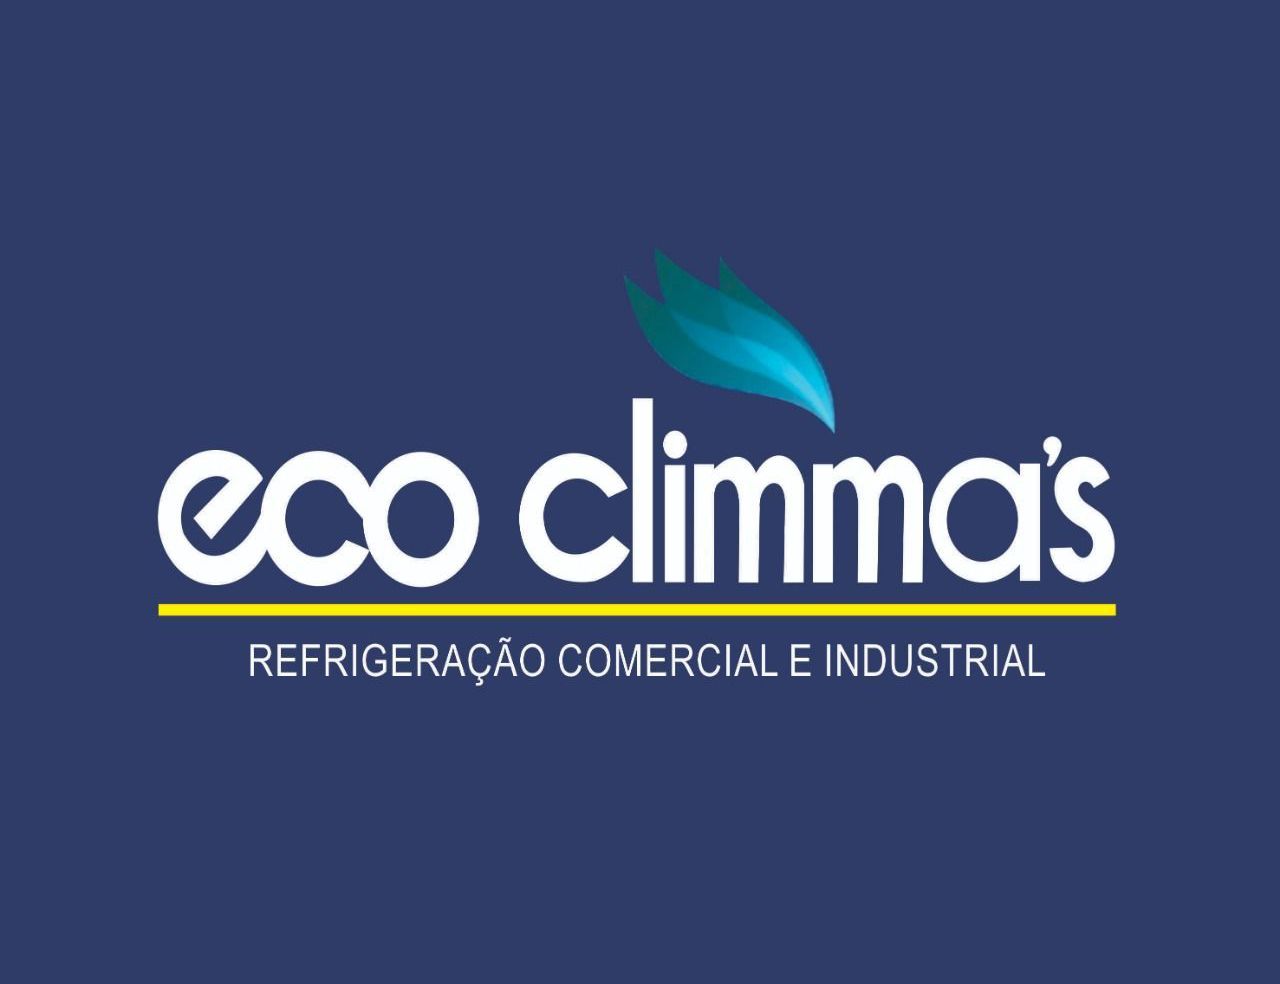 Eco climma's - Refrigeração Comercial e Industrial.